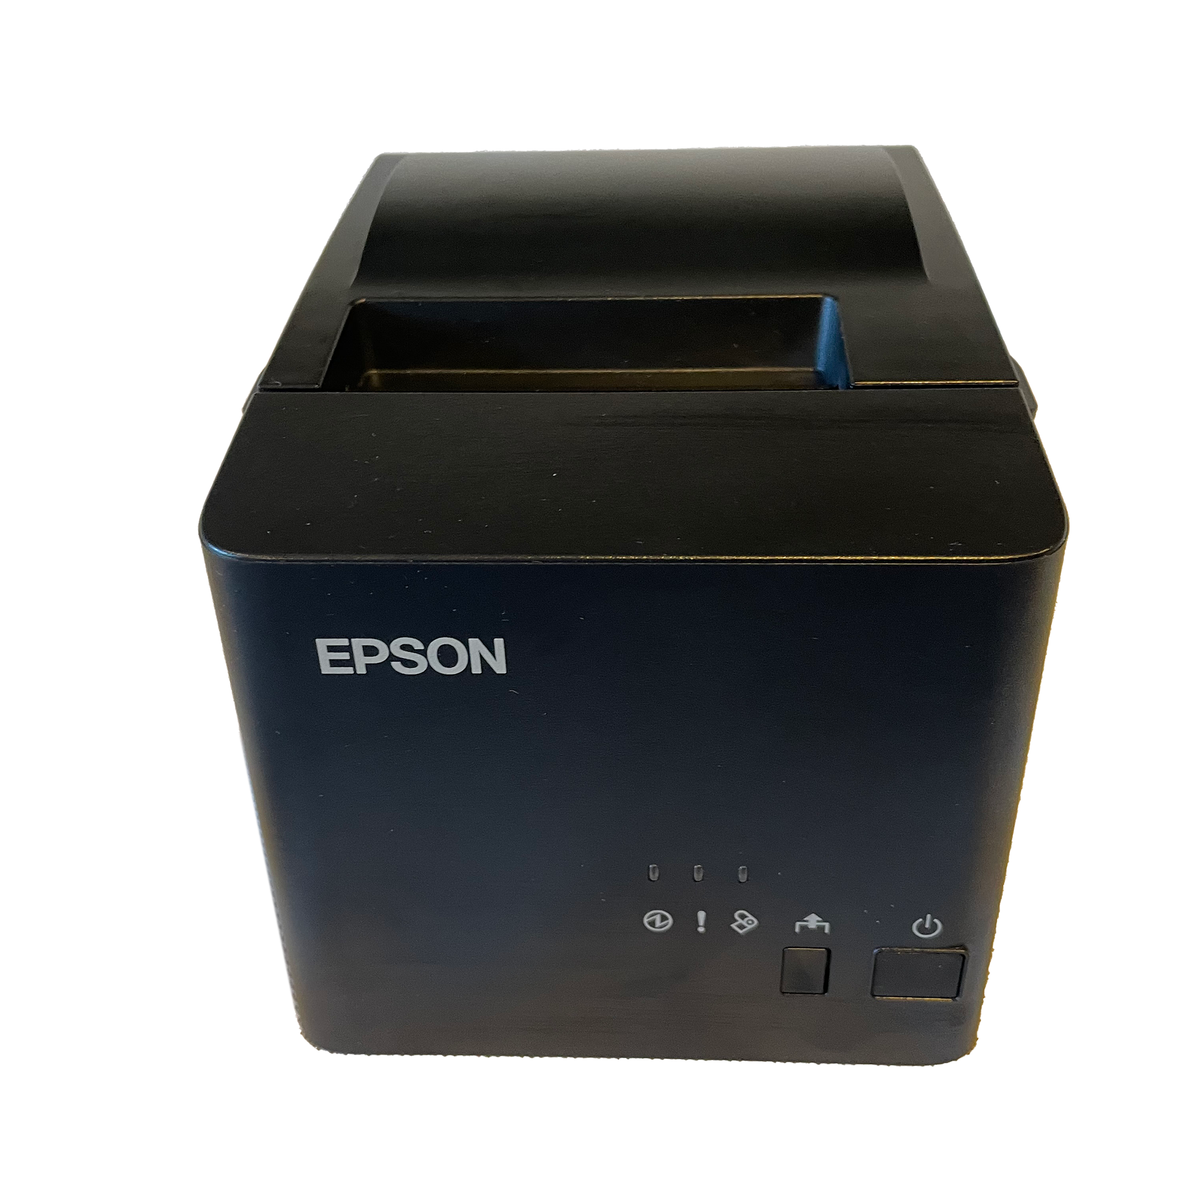 Epson Tm T82iii Usb Receipt Printer For Windows Lightspeed X Series Till Man Nz 8425